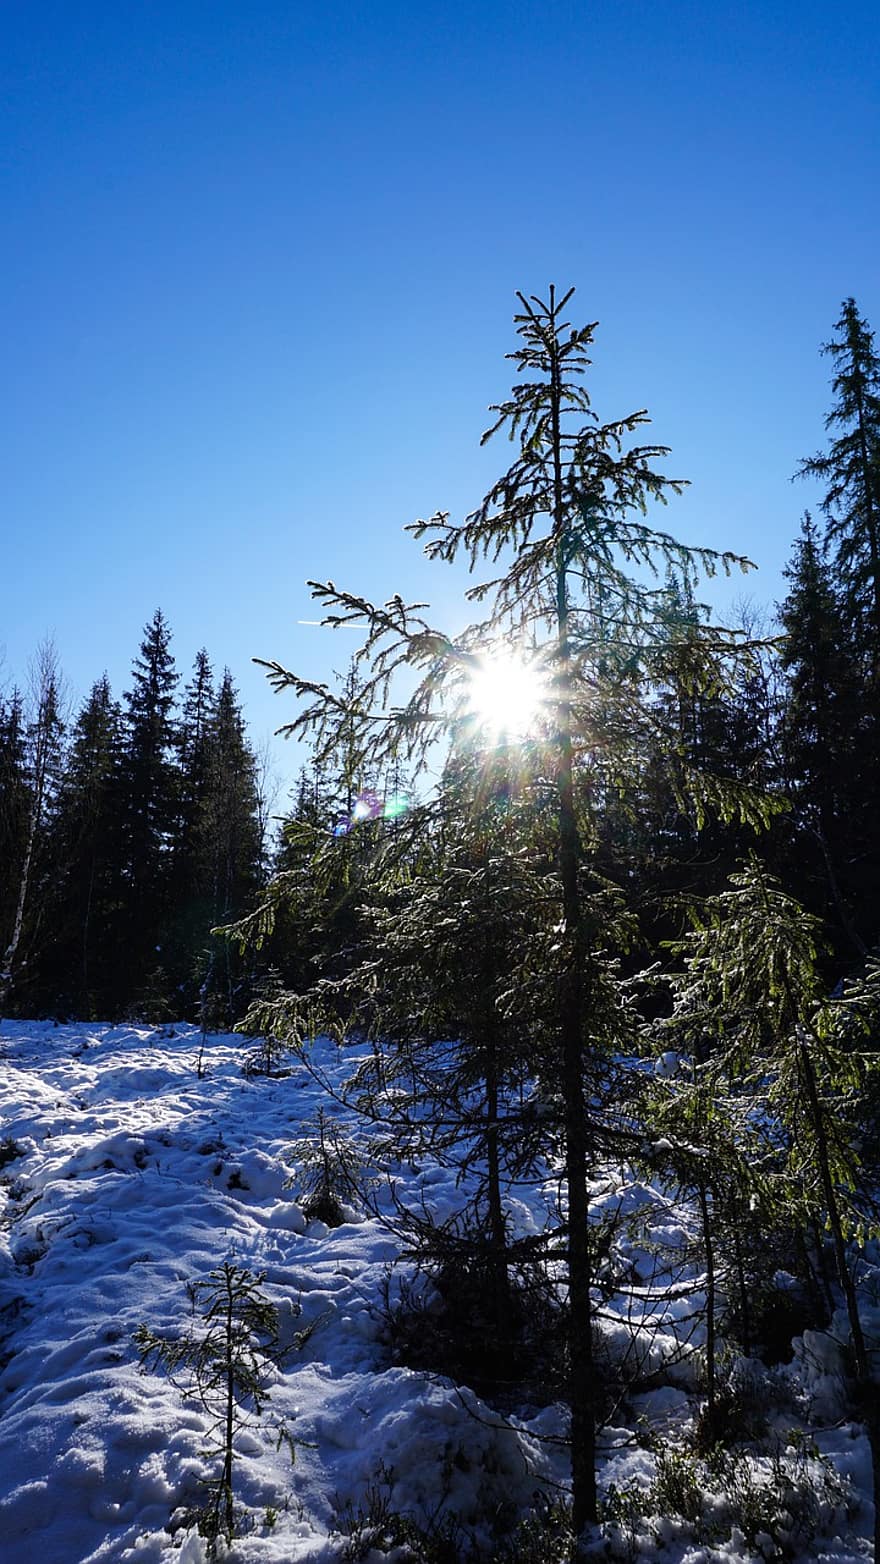 arbres, llum solar, neu, coníferes, bosc de coníferes, bosc de neu, nevat, boscos, gelades, gelada, brisa